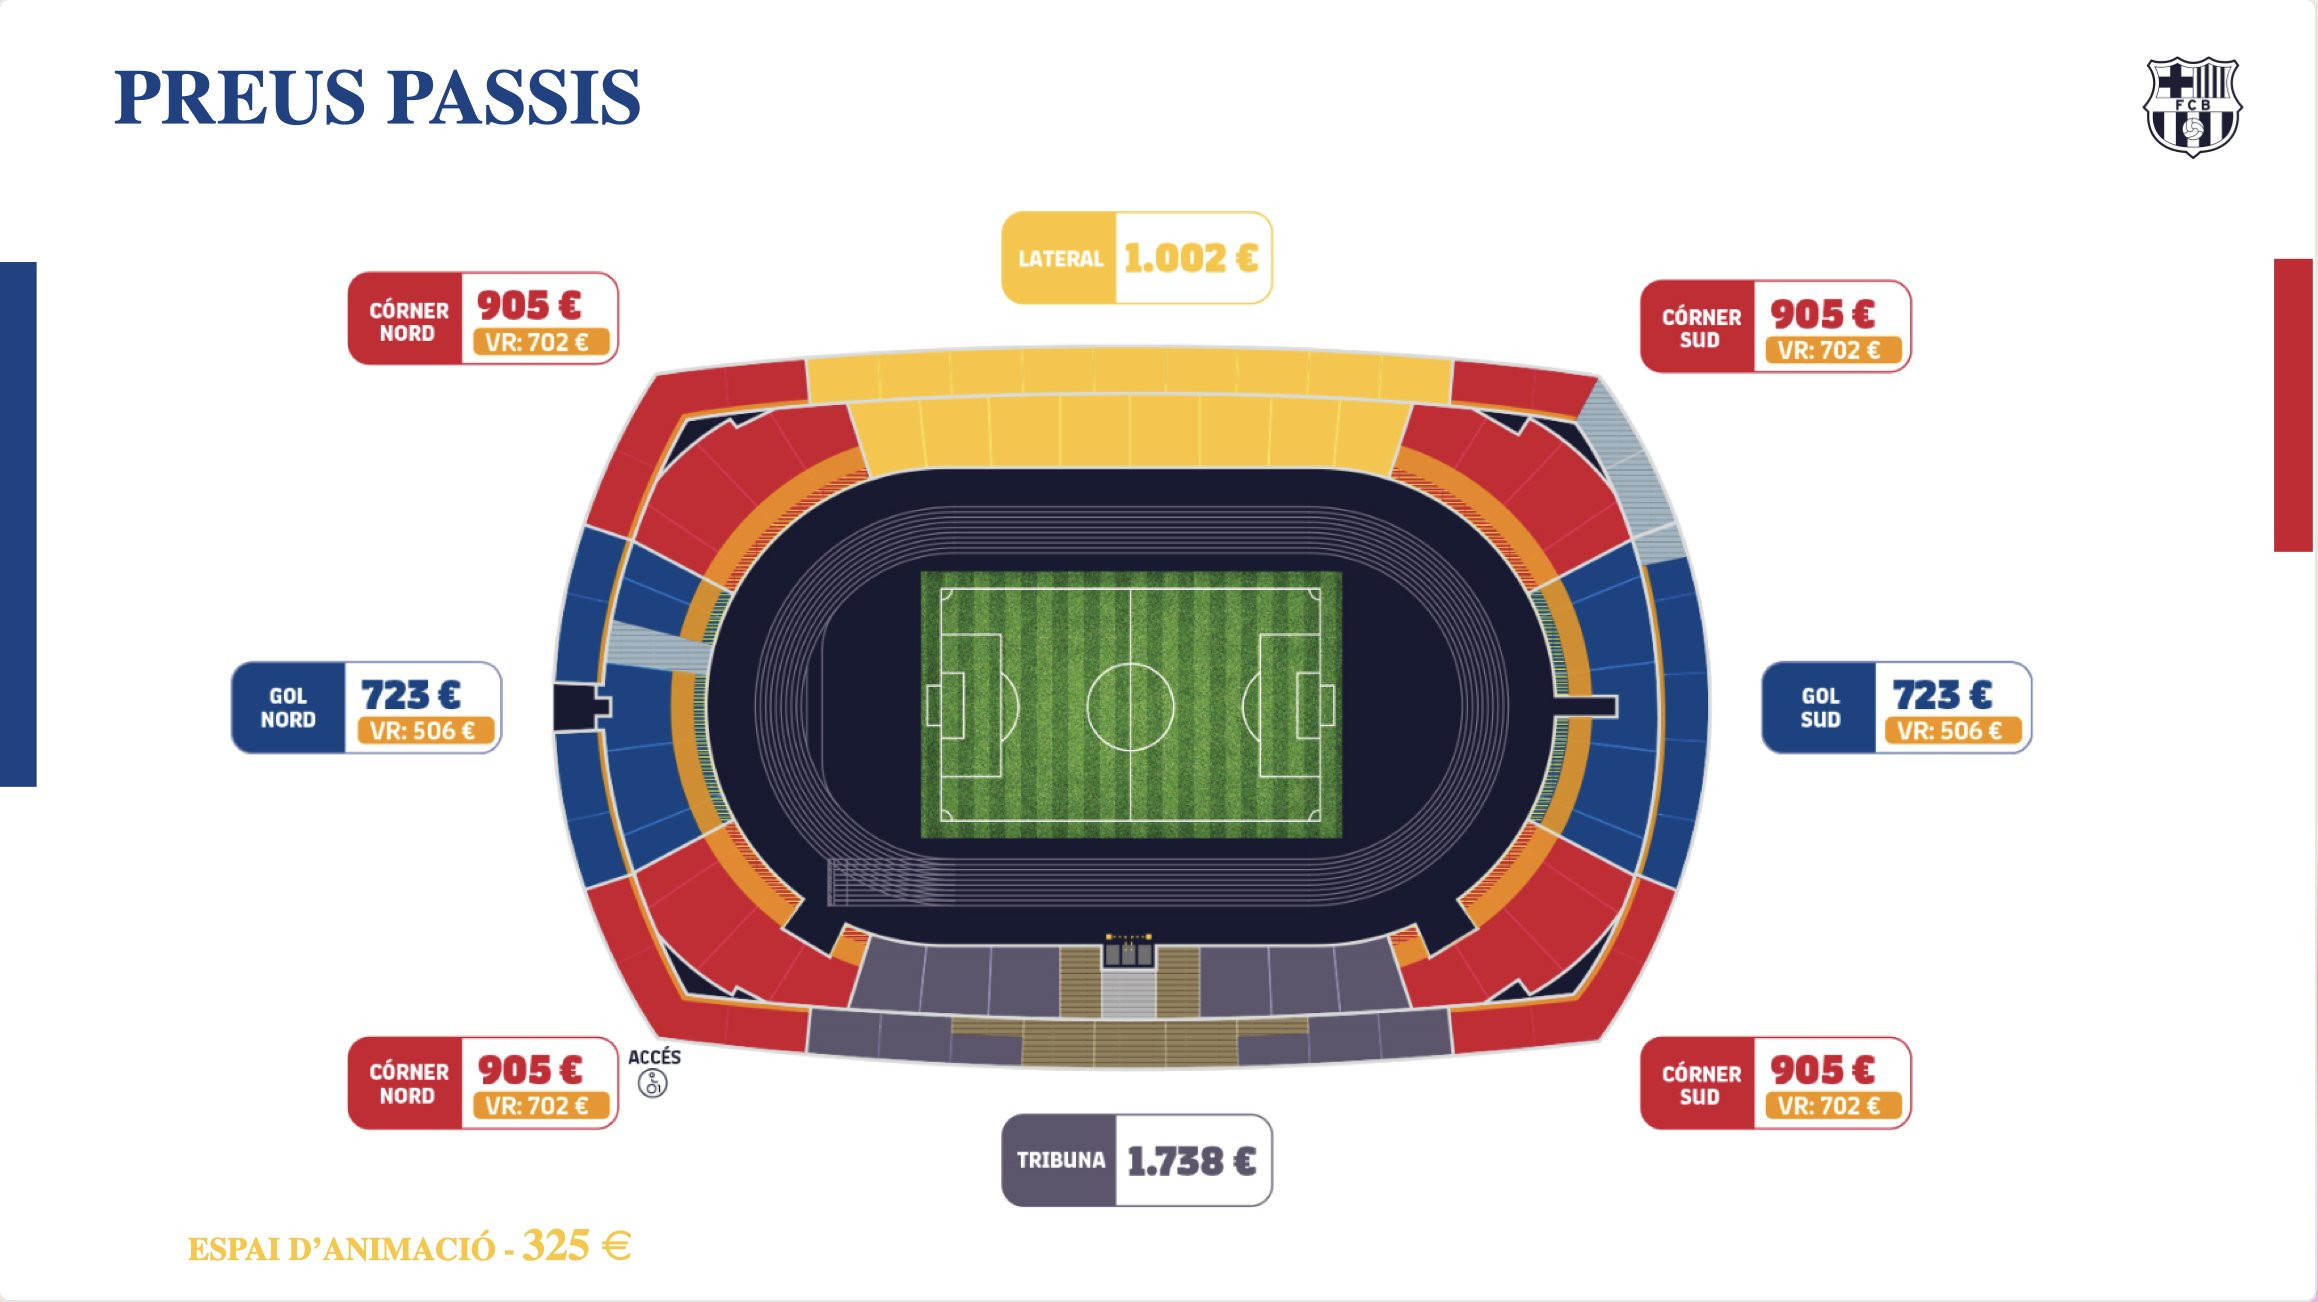 Los precios para los abonos en el estadio de Montjuïc / FCB